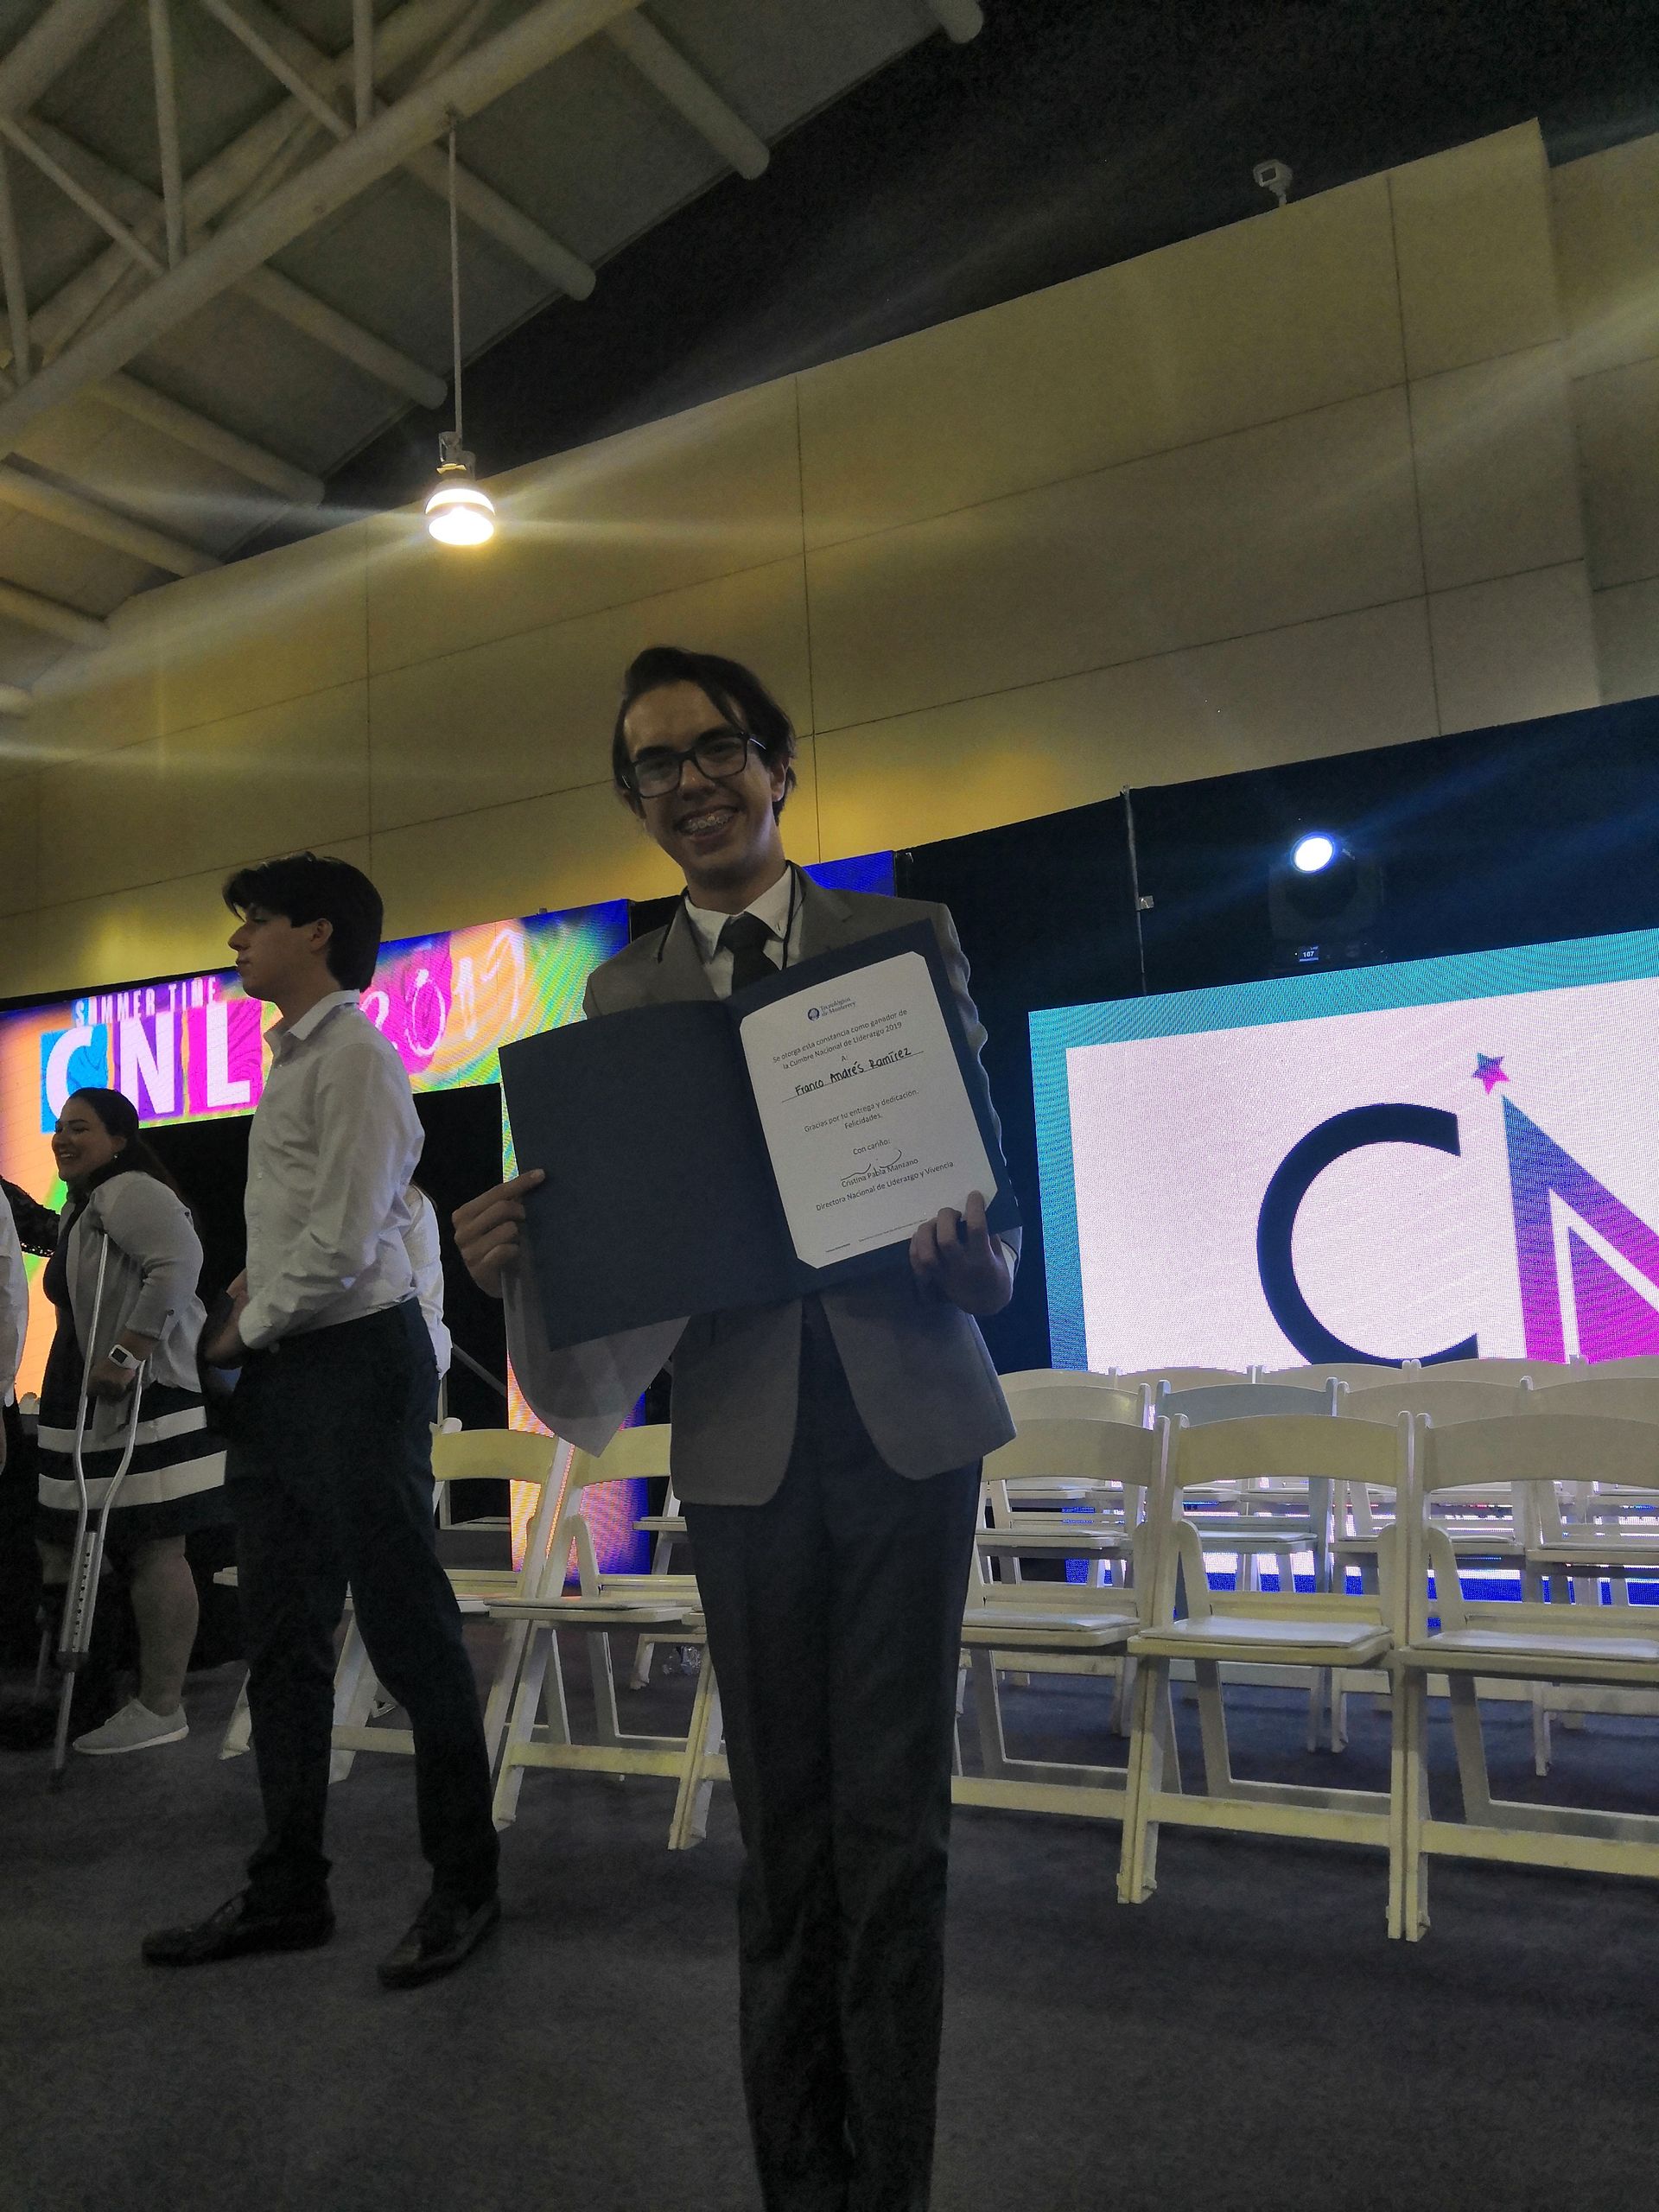 Franco ganador en CNL 2019